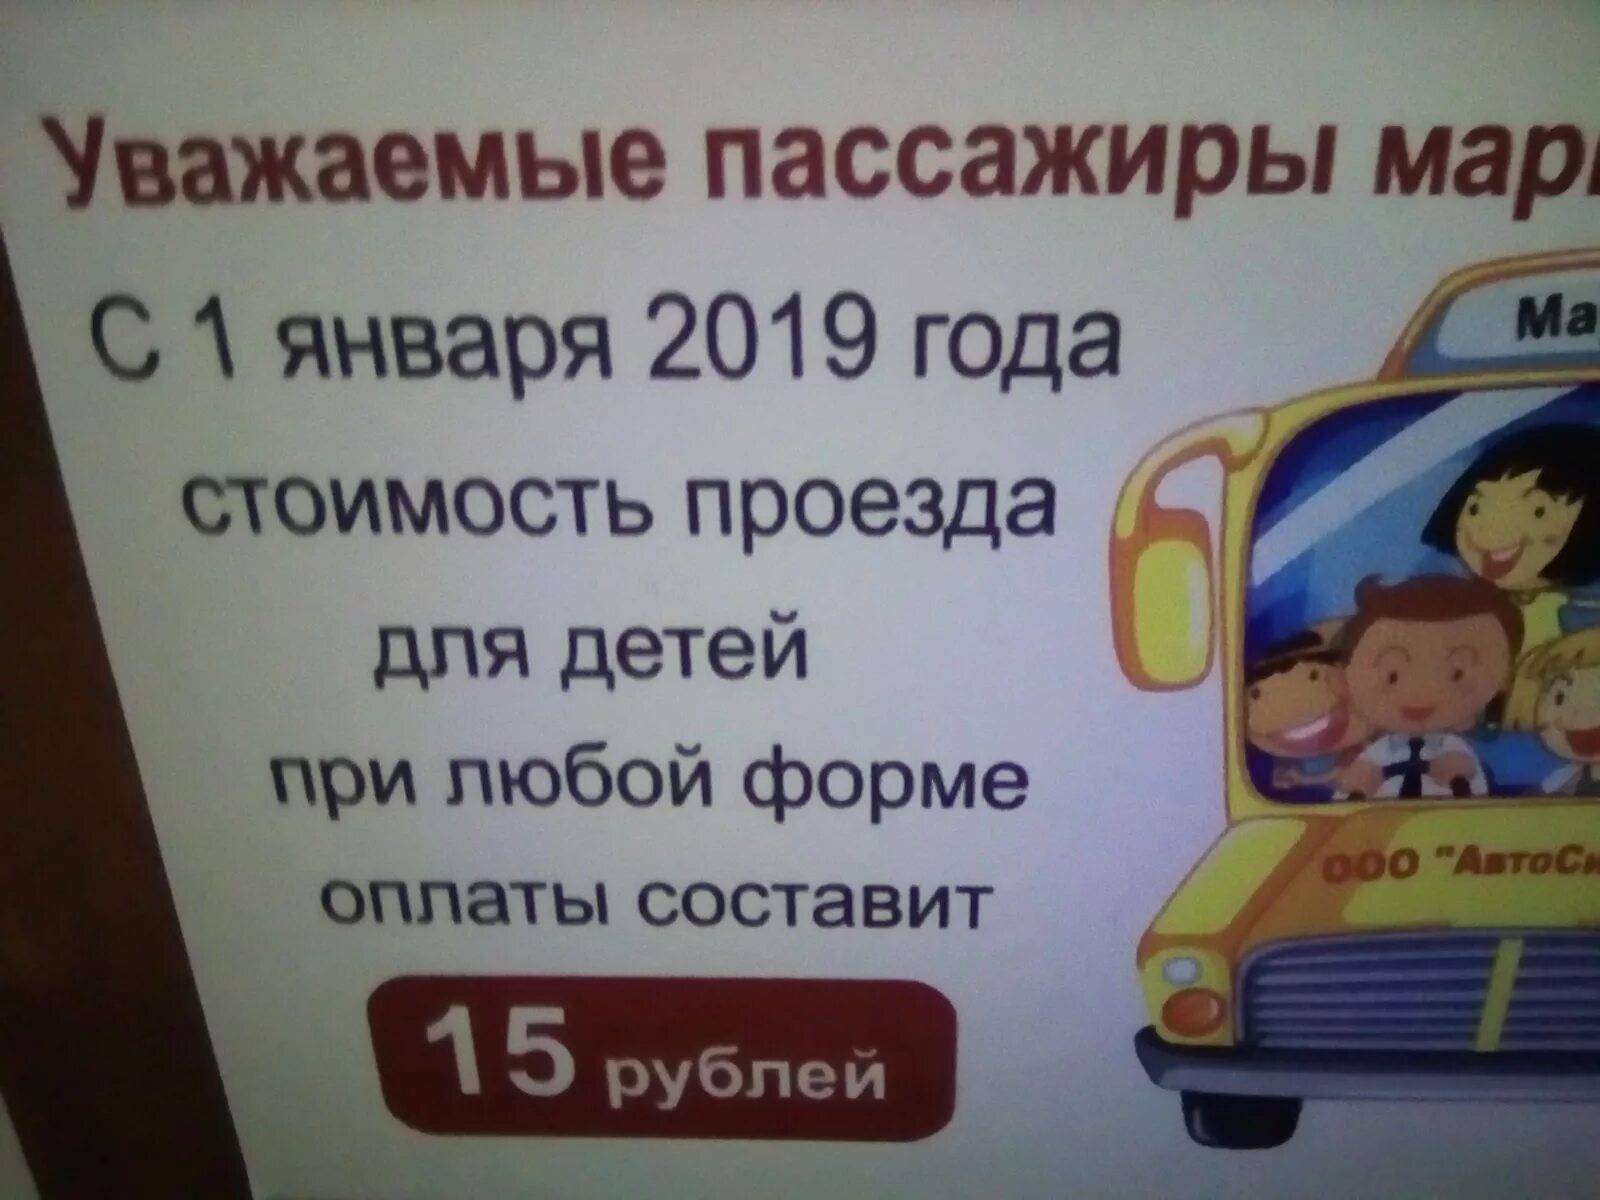 Омская езда проездной. Стоимость проезда в трамвае в Омске. Картинка Автосила исто.